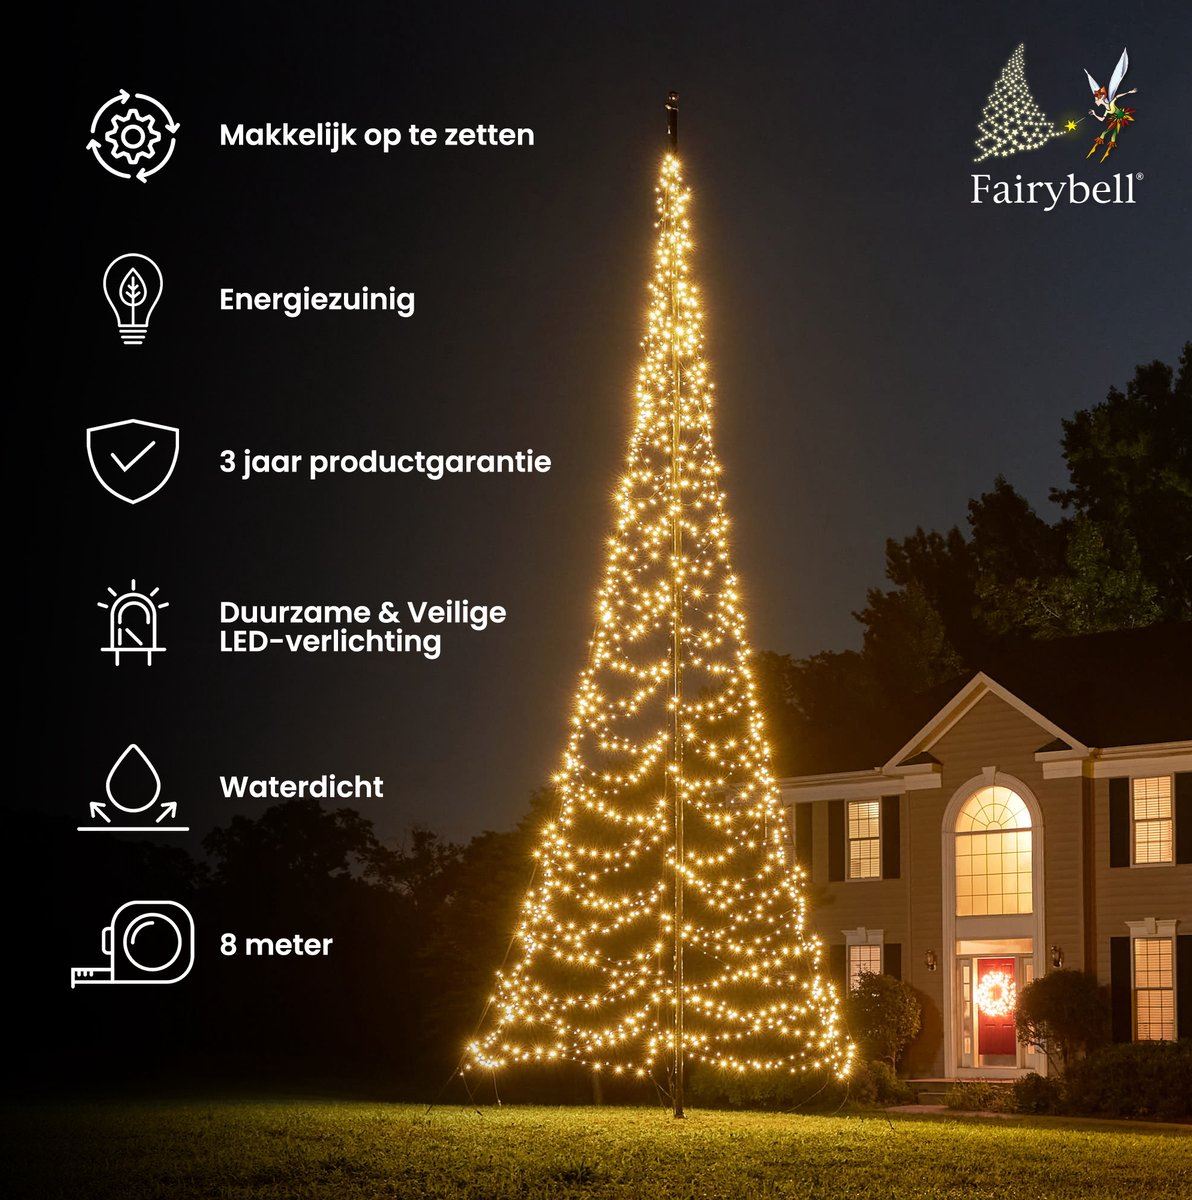 Fairybell-kerstverlichting-kerstboom-8M-hoog-1500-LED-lampjes-in-warmwitte-kleur